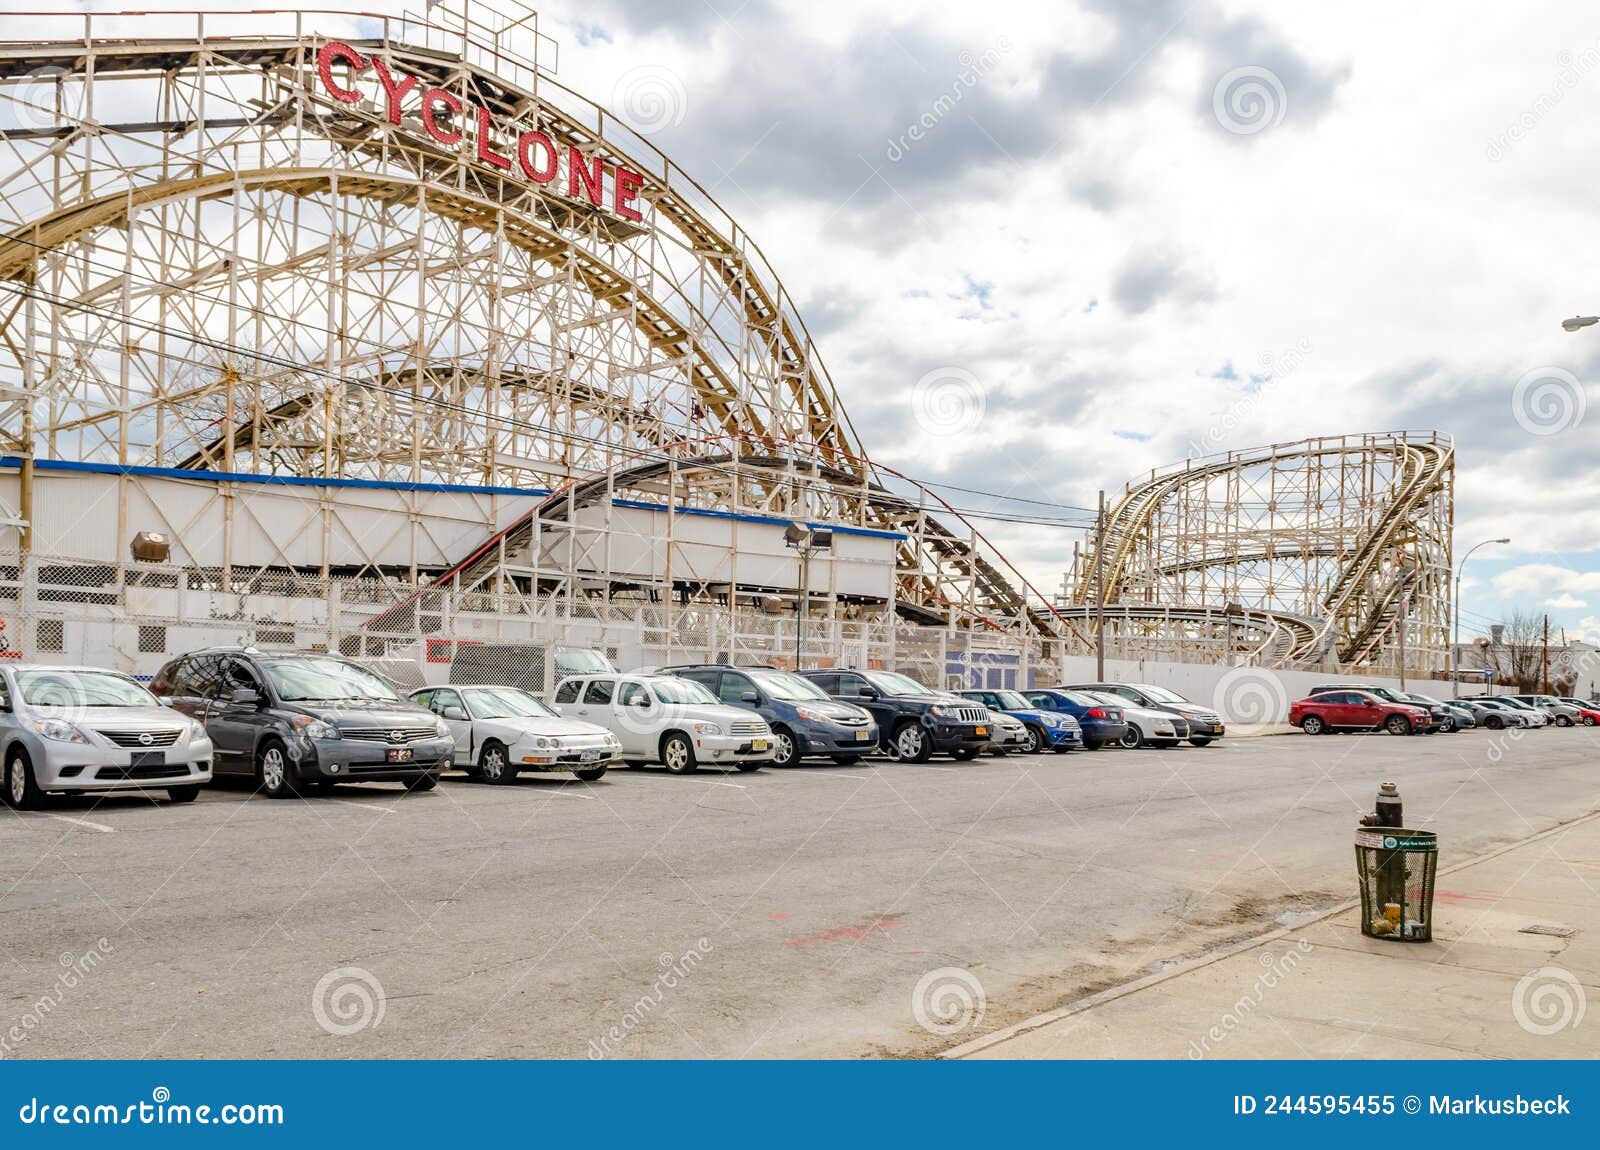 Coney Island Cyclone - Luna Park in Coney Island